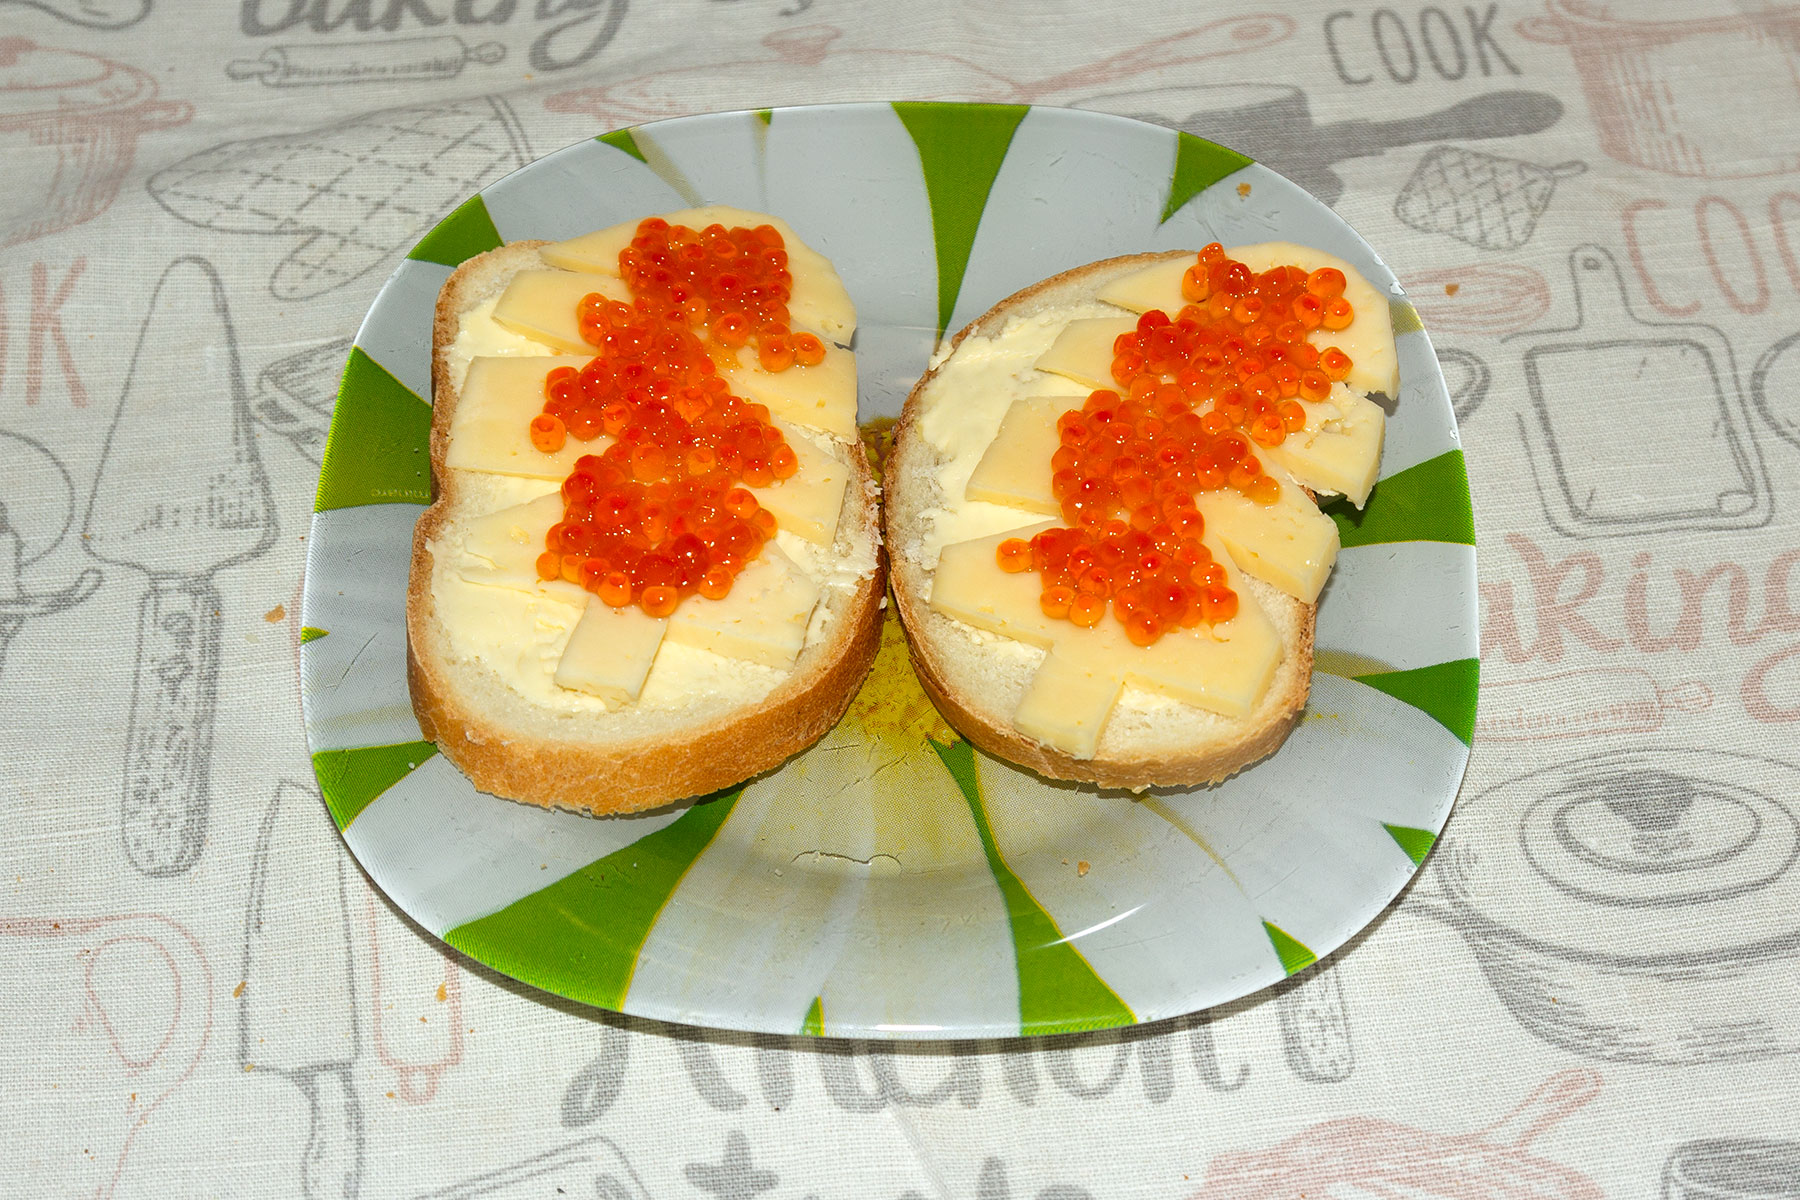 Бутерброд с красной икрой и твердым сыром